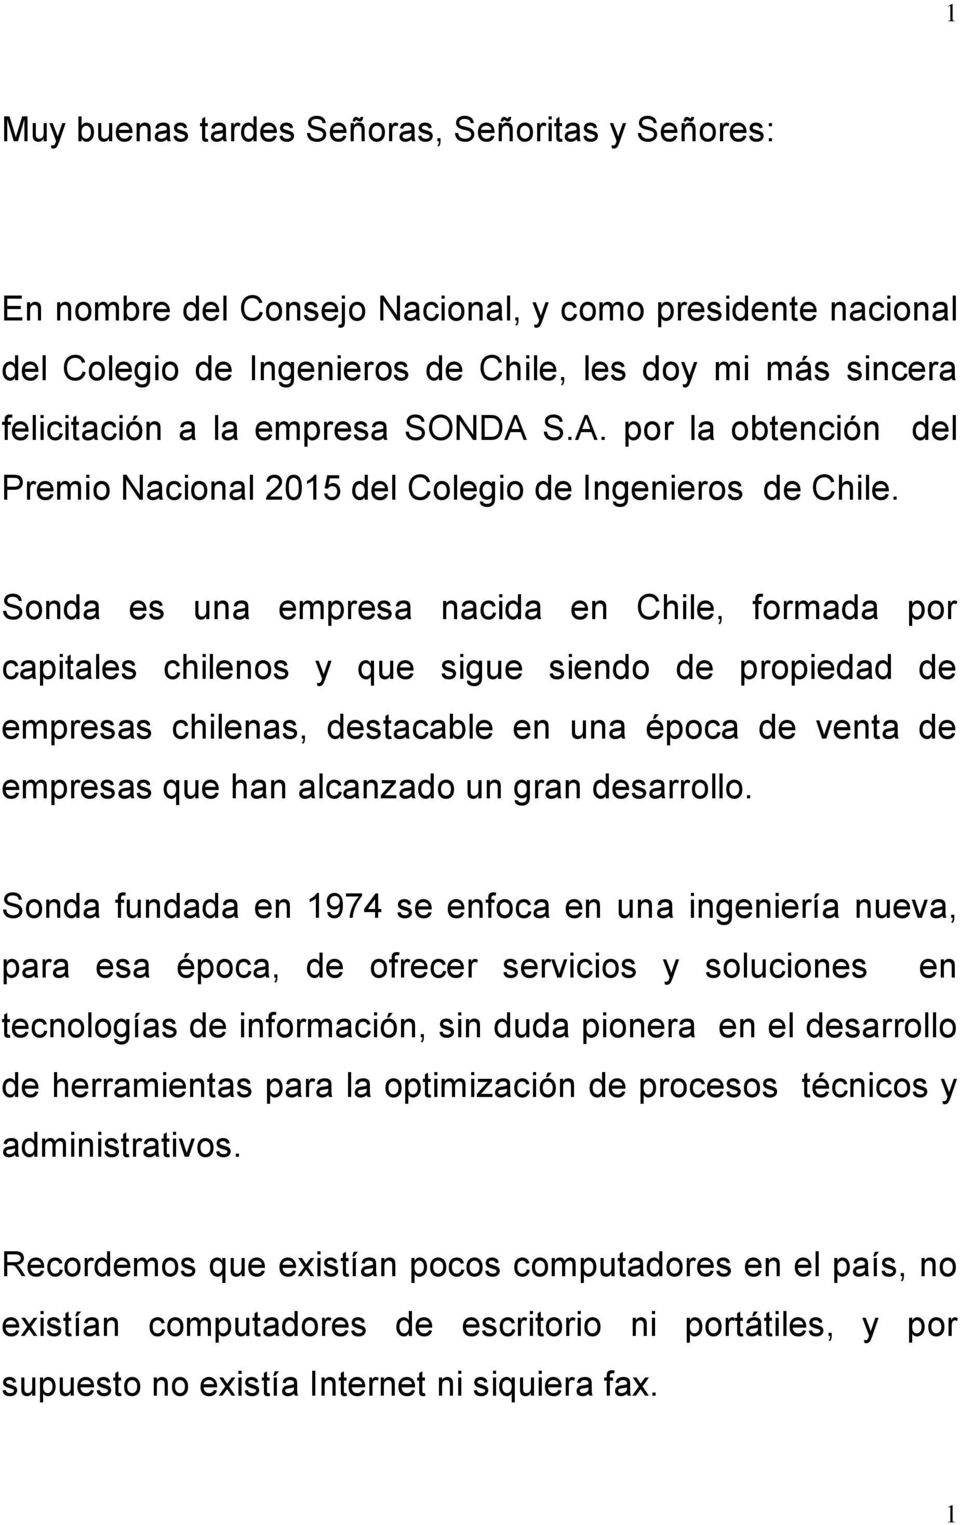 Sonda es una empresa nacida en Chile, formada por capitales chilenos y que sigue siendo de propiedad de empresas chilenas, destacable en una época de venta de empresas que han alcanzado un gran